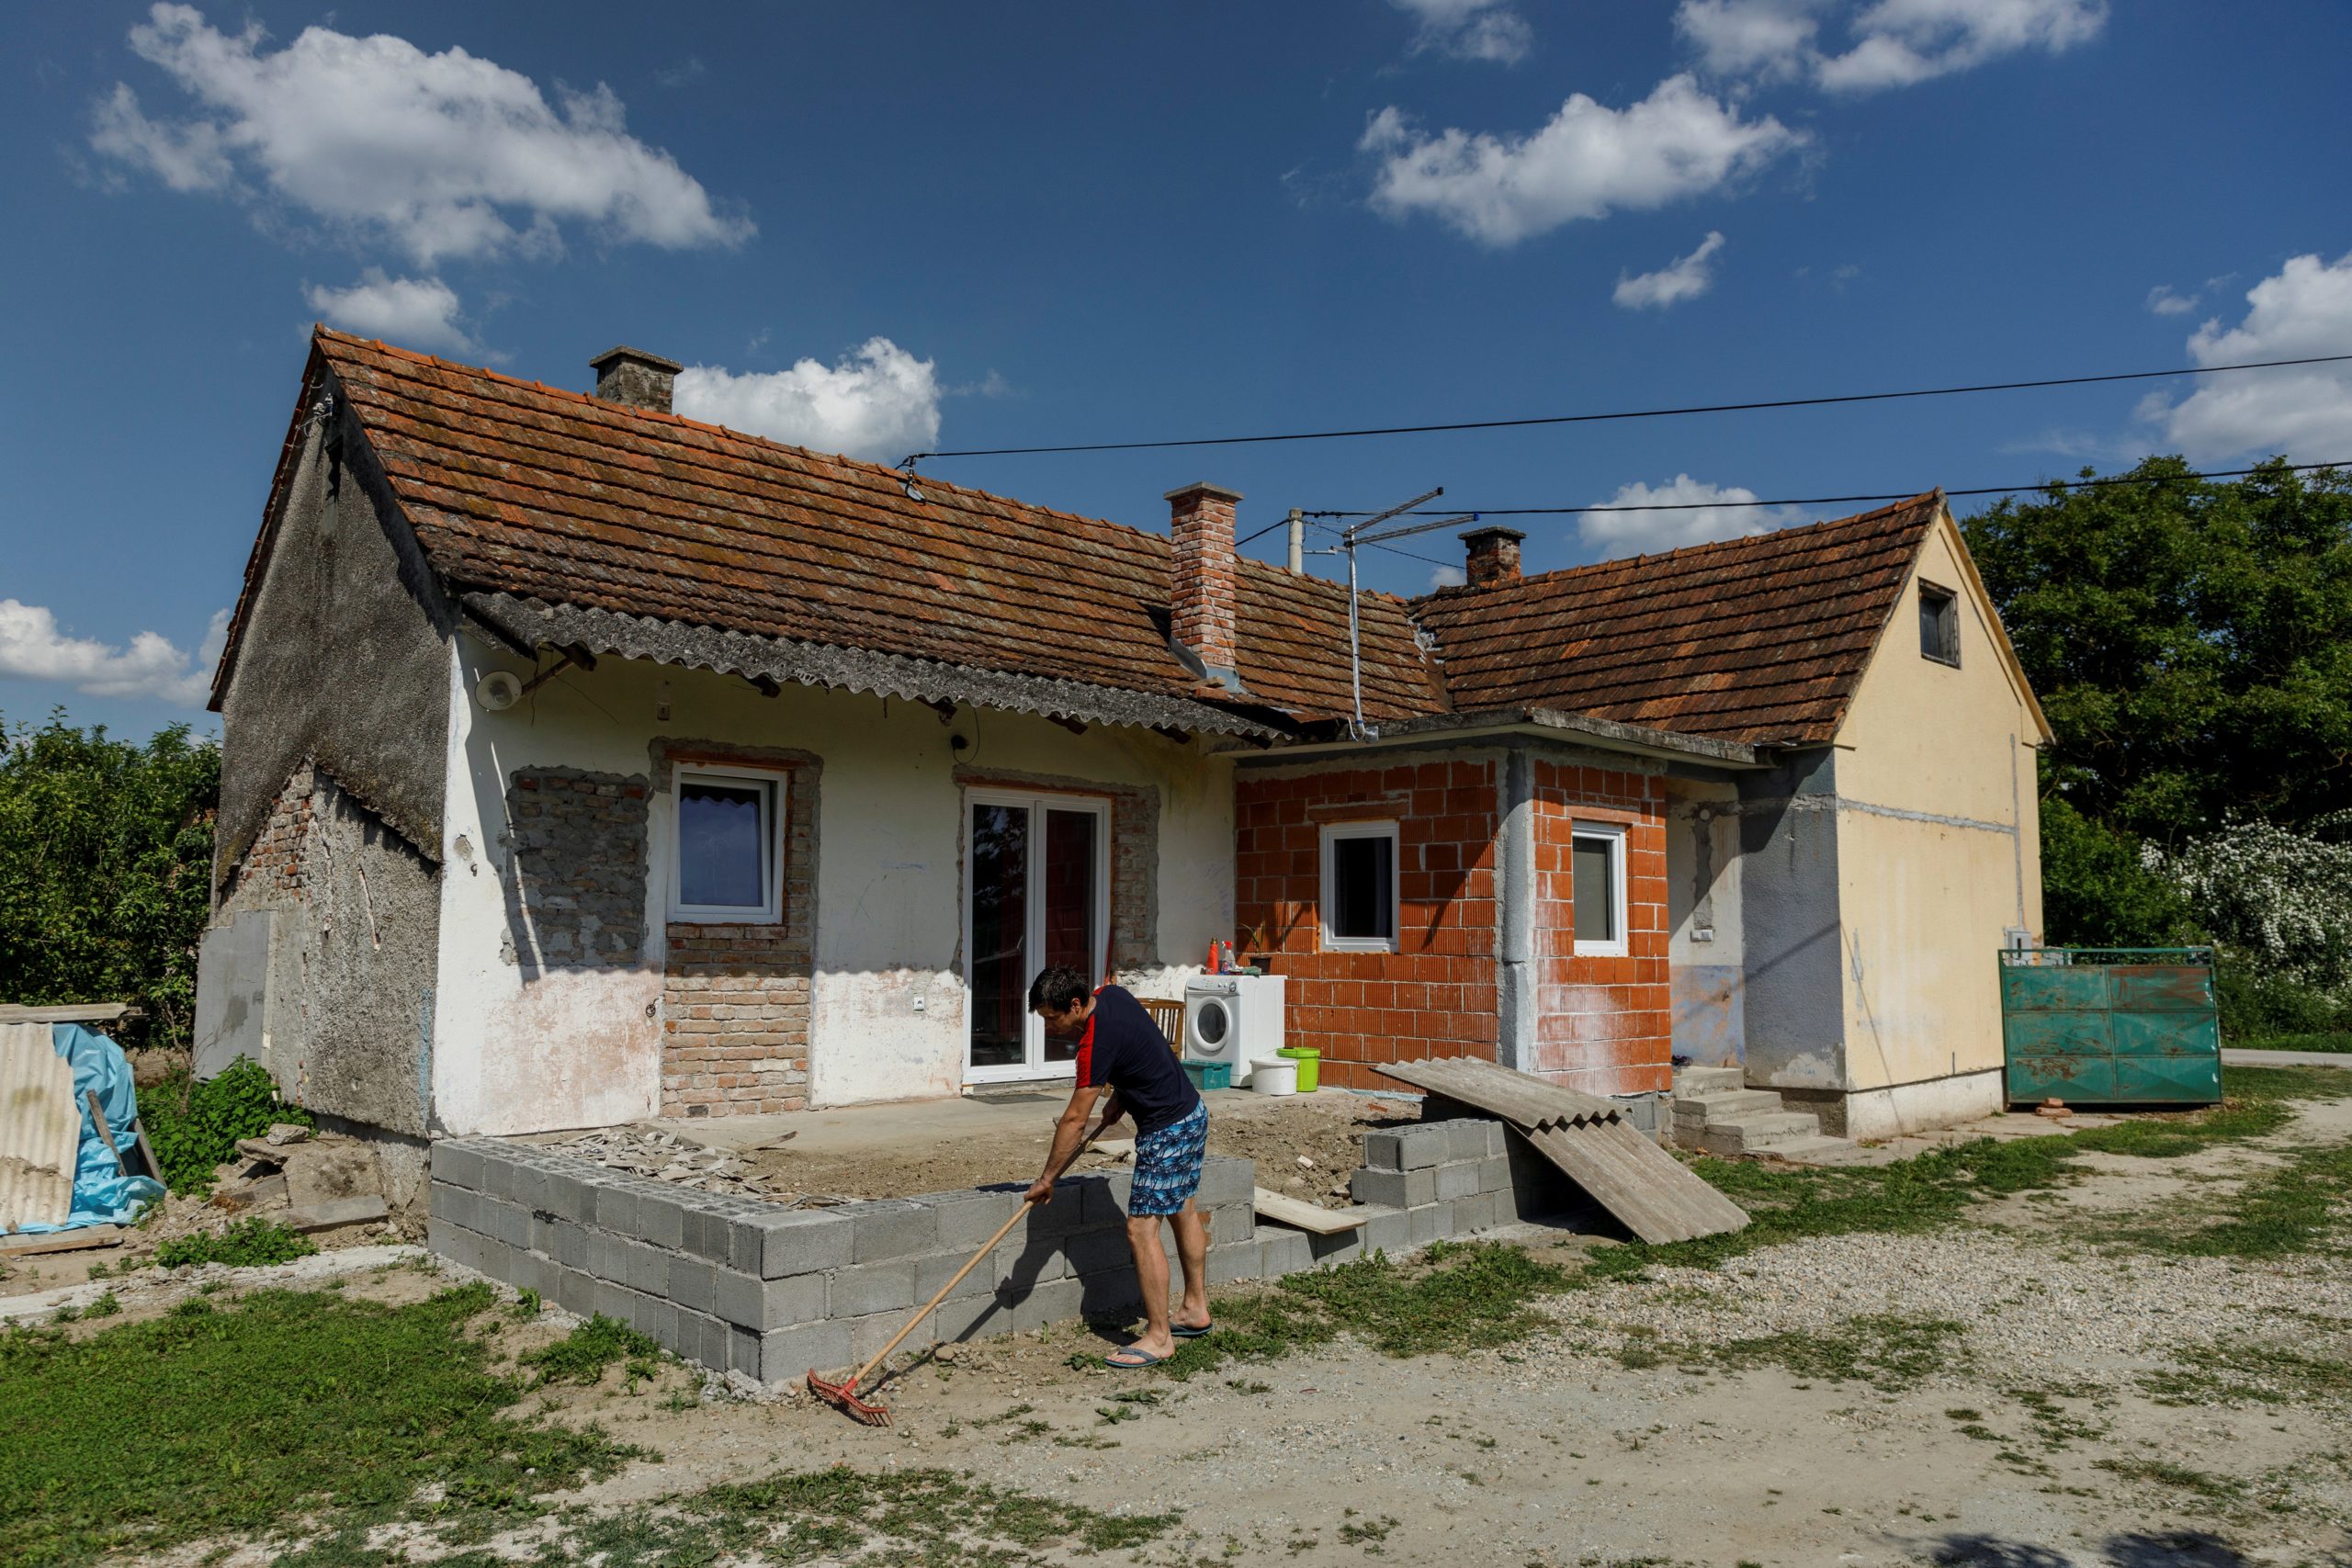 eine kroatische kleinstadt verkauft häuser für 13 cent – diese bedingungen gibt es